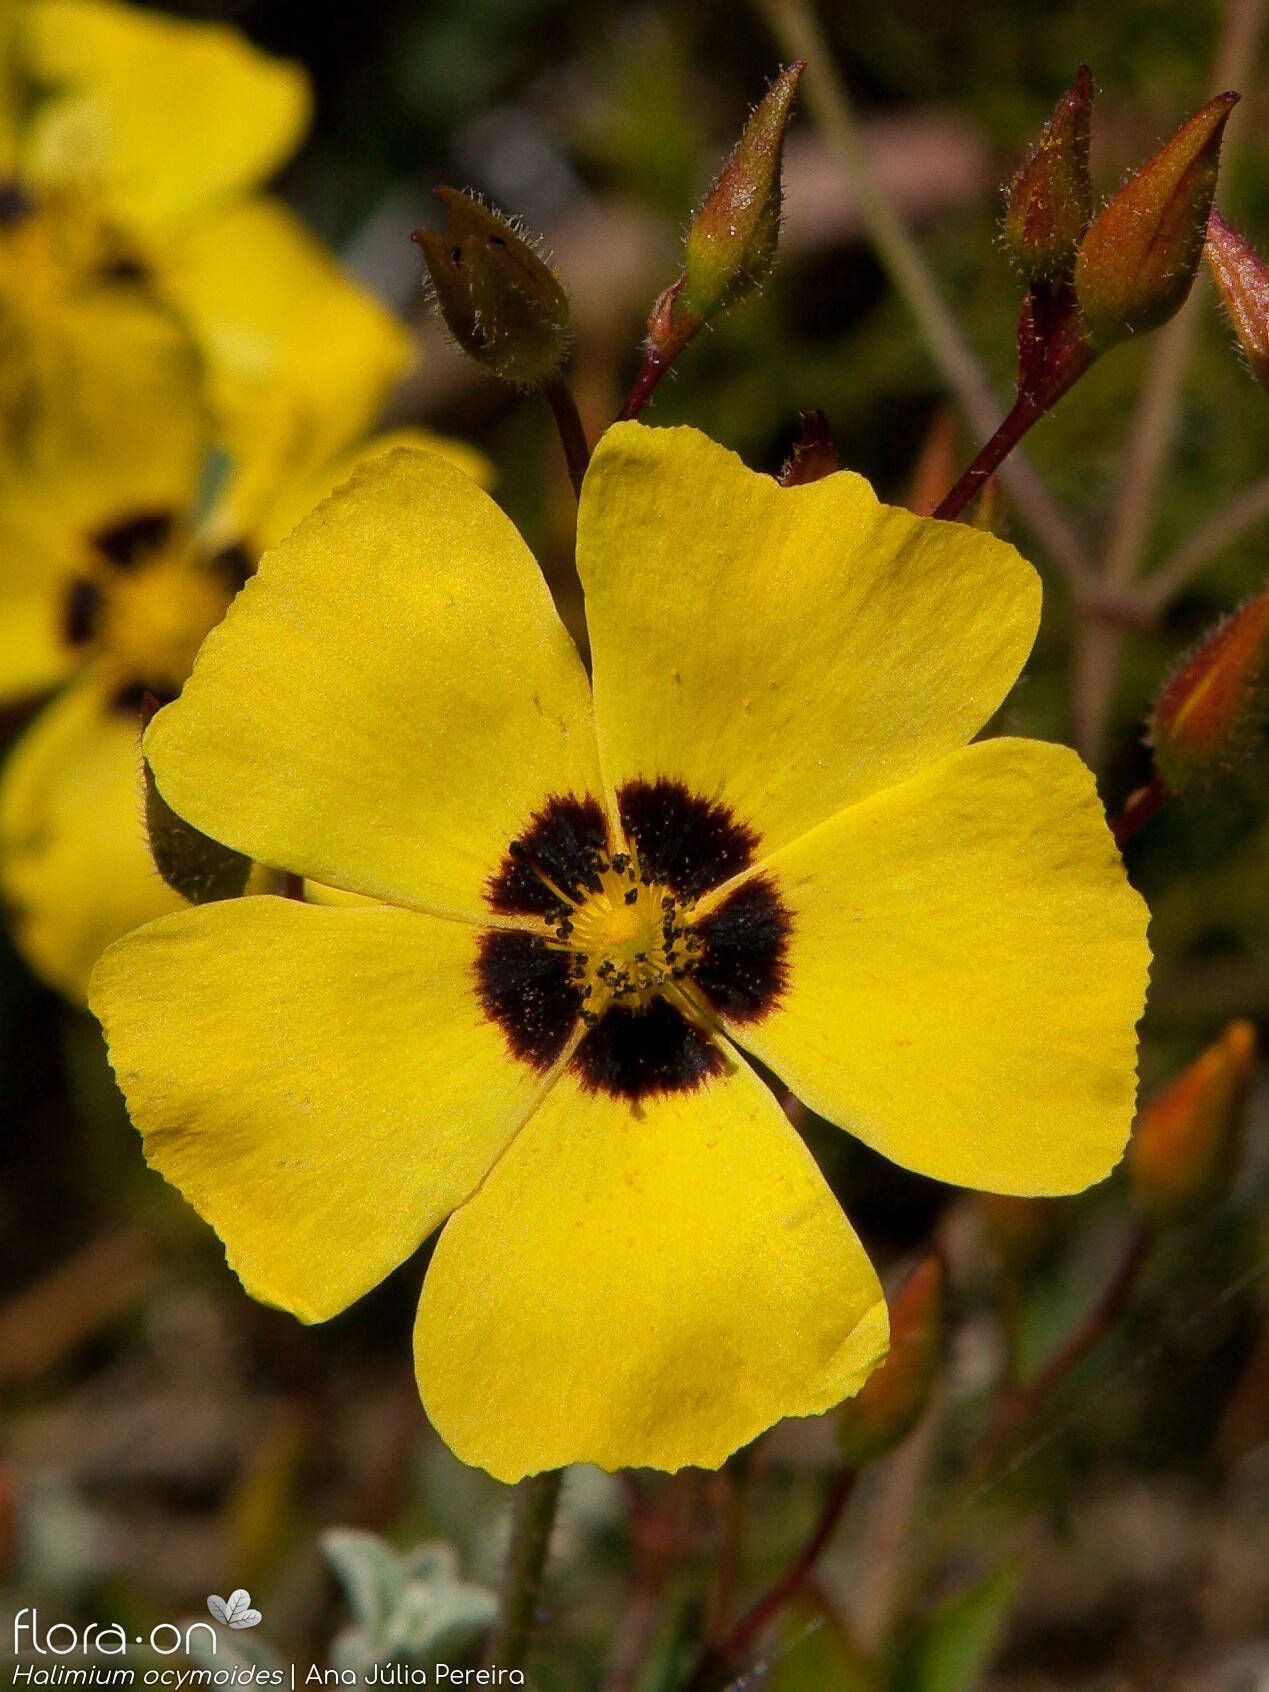 Halimium ocymoides - Flor (close-up) | Ana Júlia Pereira; CC BY-NC 4.0